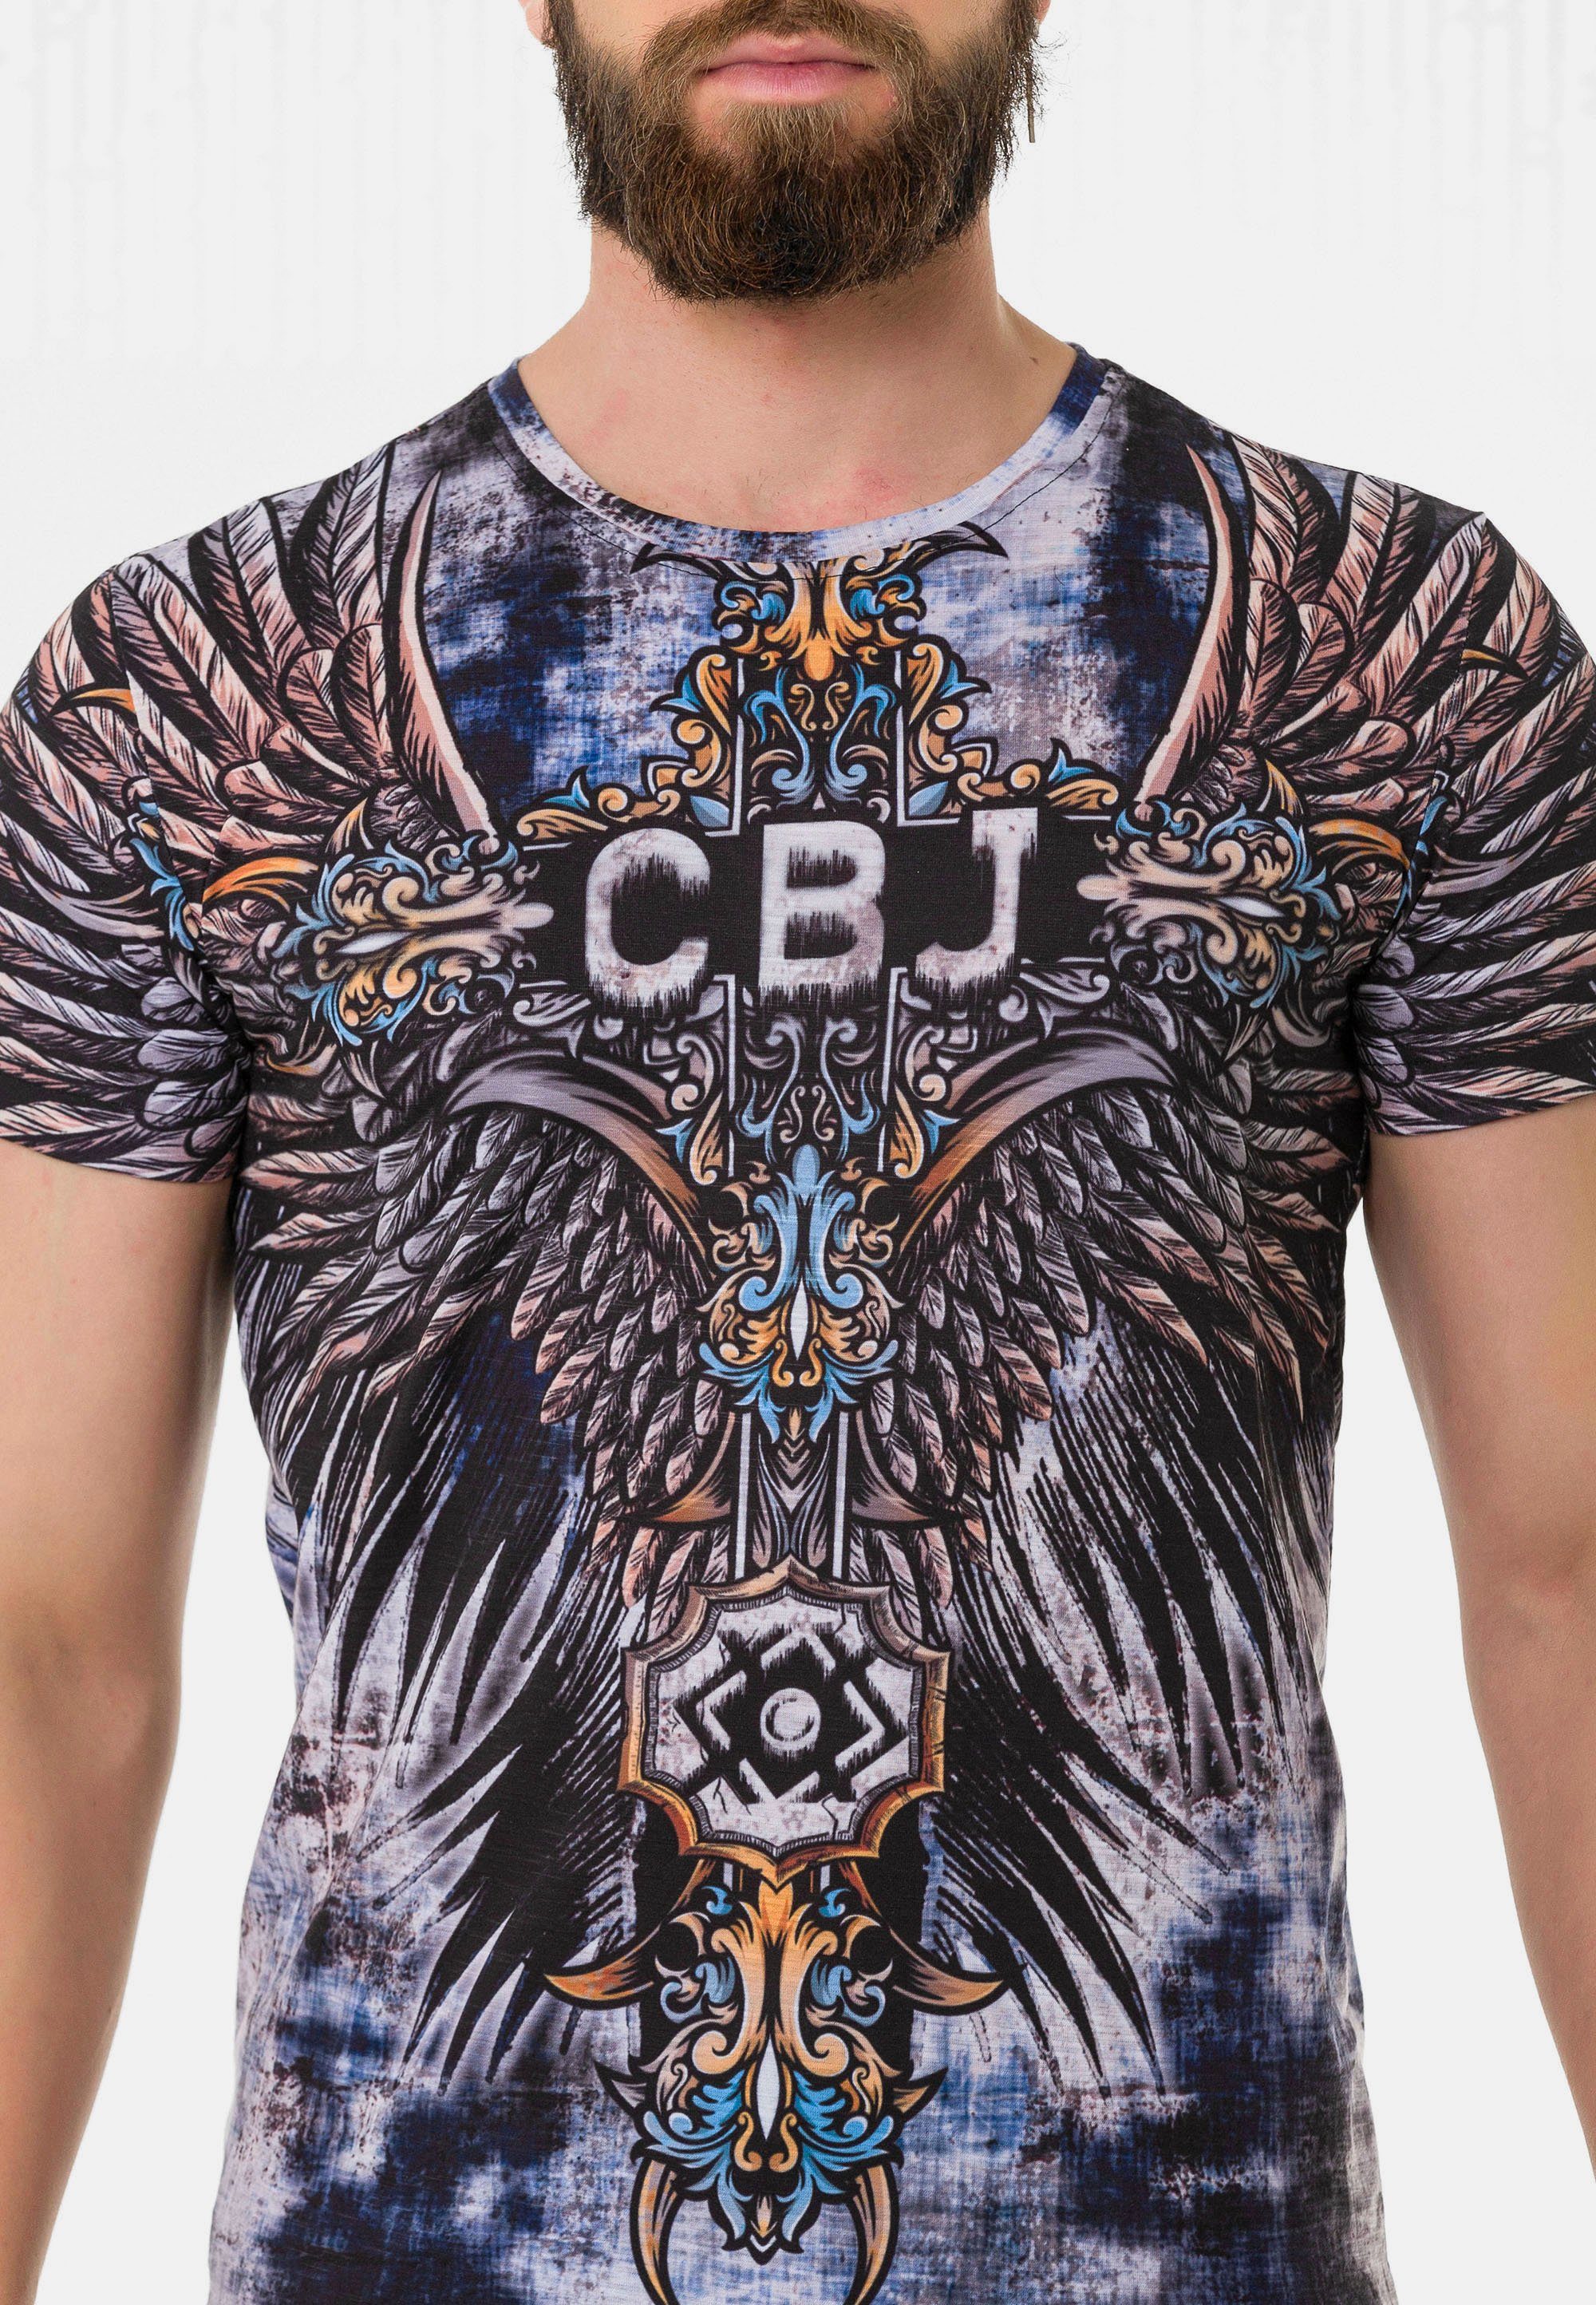 Markenprints & coolen T-Shirt Cipo Baxx mit